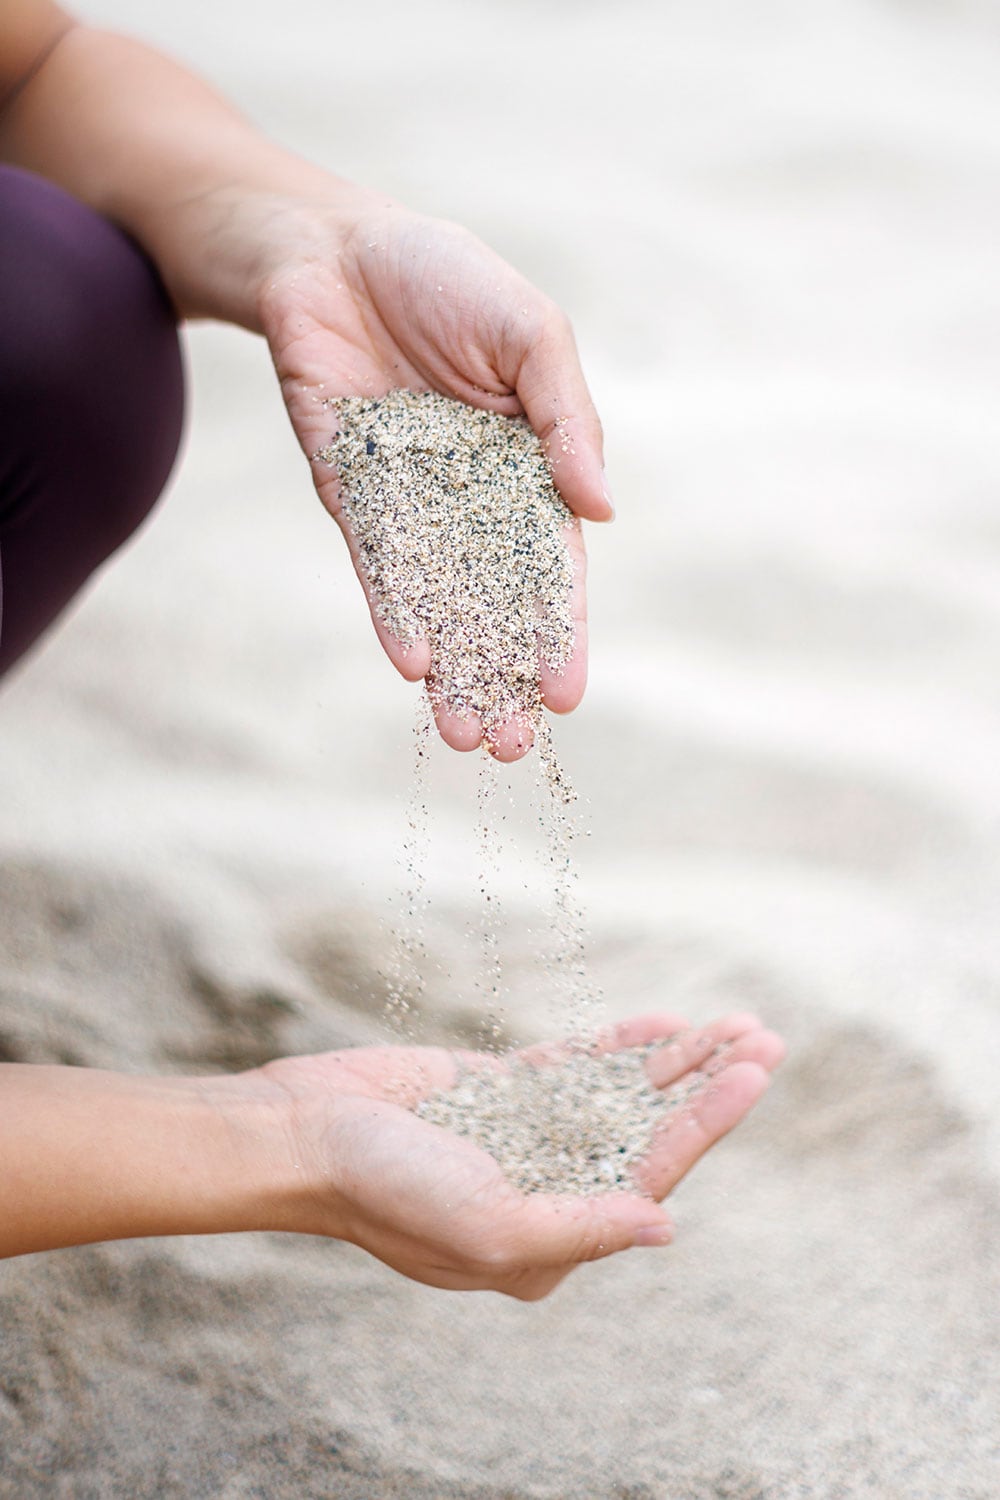 ビーチの砂はさらさらと清らか。